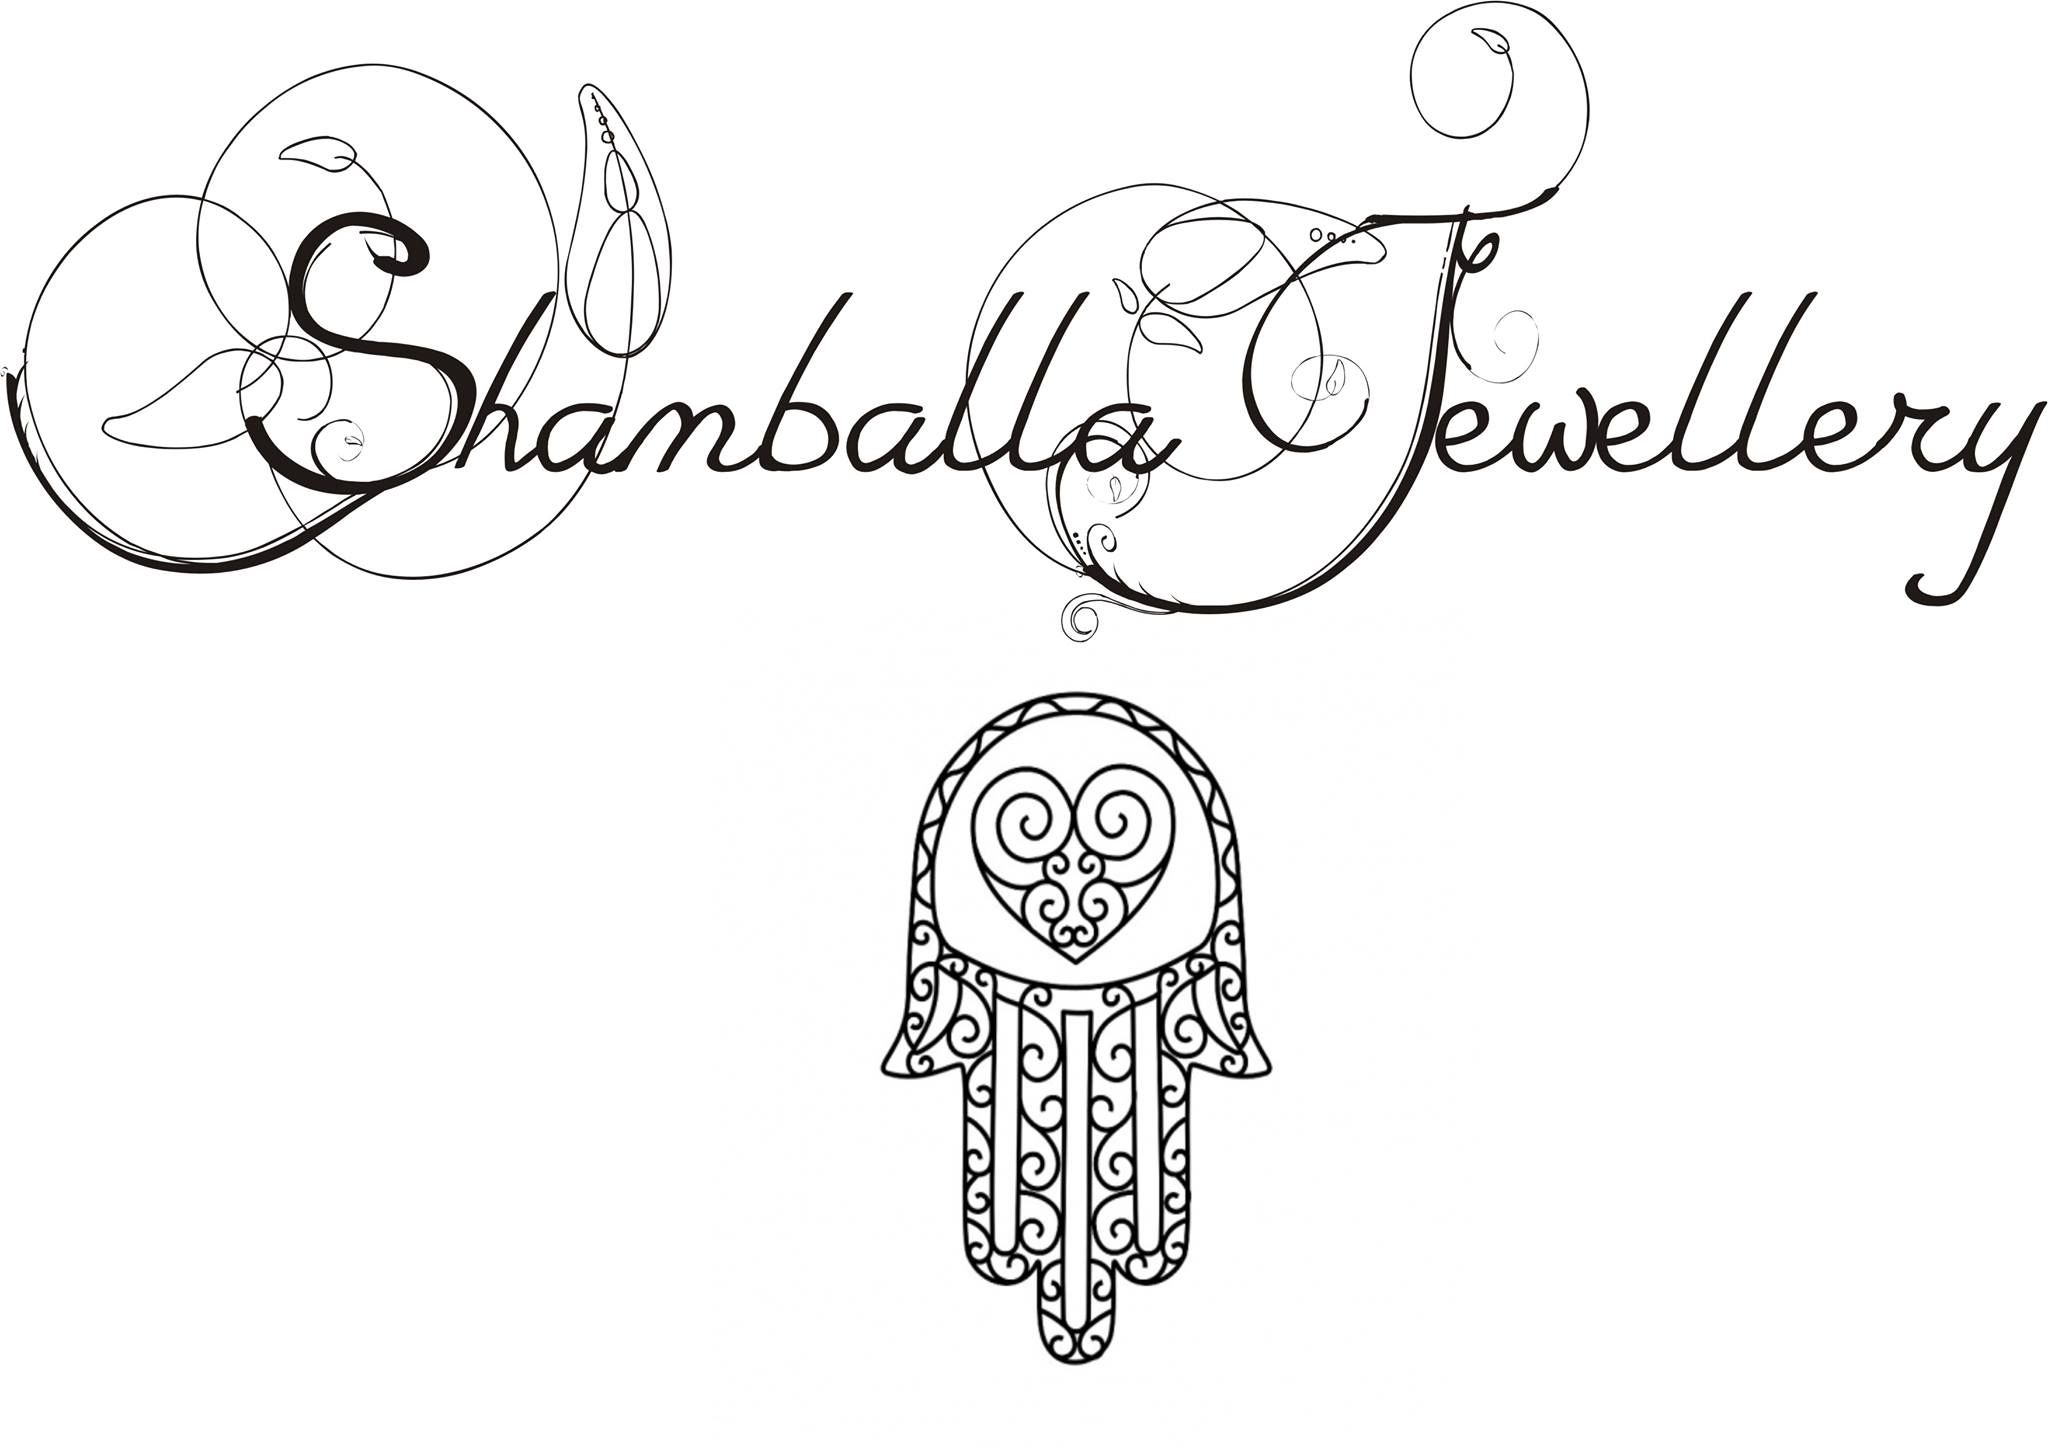 shambala-jewelry-logo